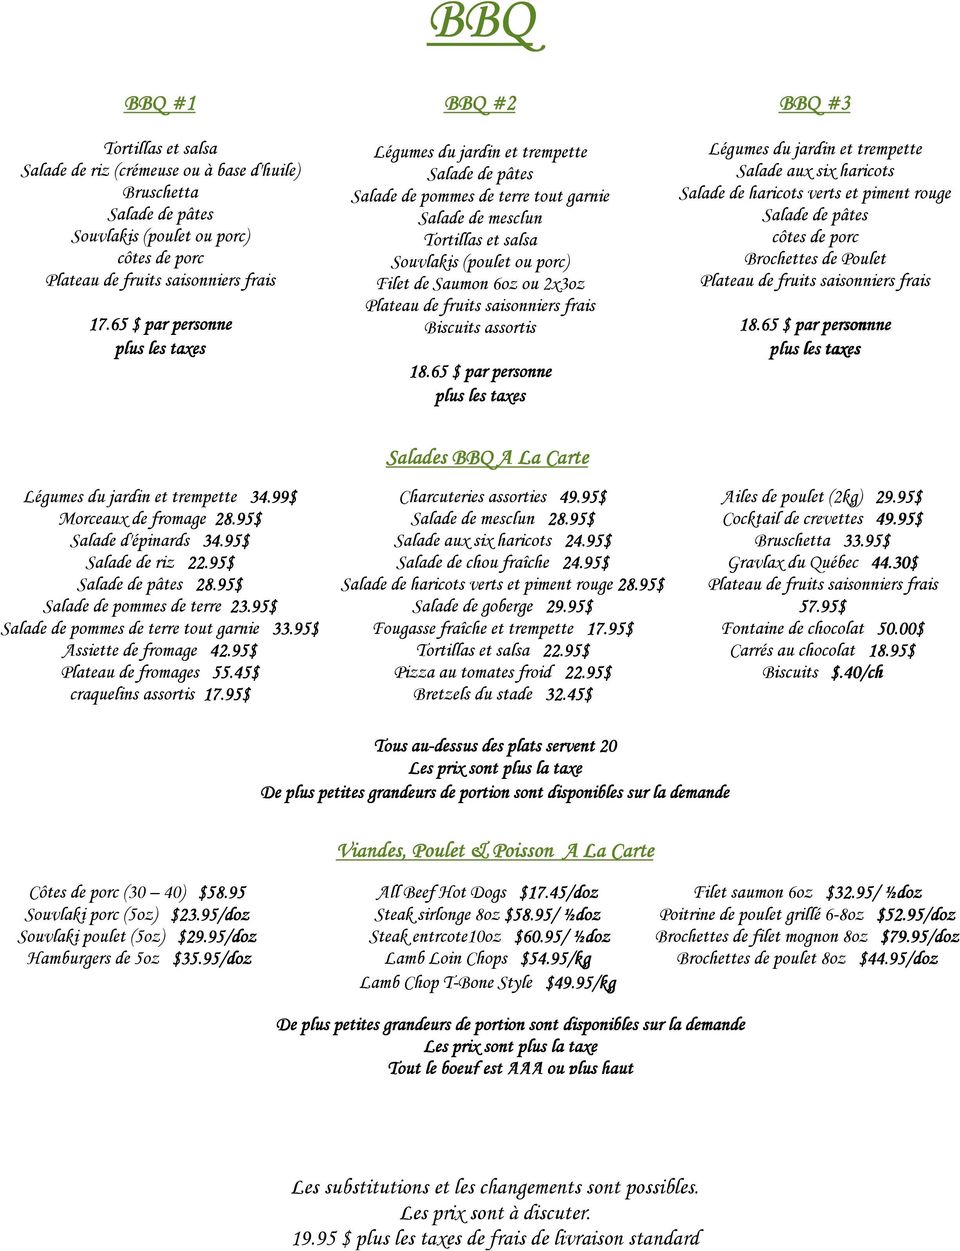 65 $ par personne ne BBQ #3 Salade aux six haricots Salade de haricots verts et piment rouge Salade de pâtes côtes de porc Brochettes de Poulet 18.65 $ par r person sonnne nne 34.